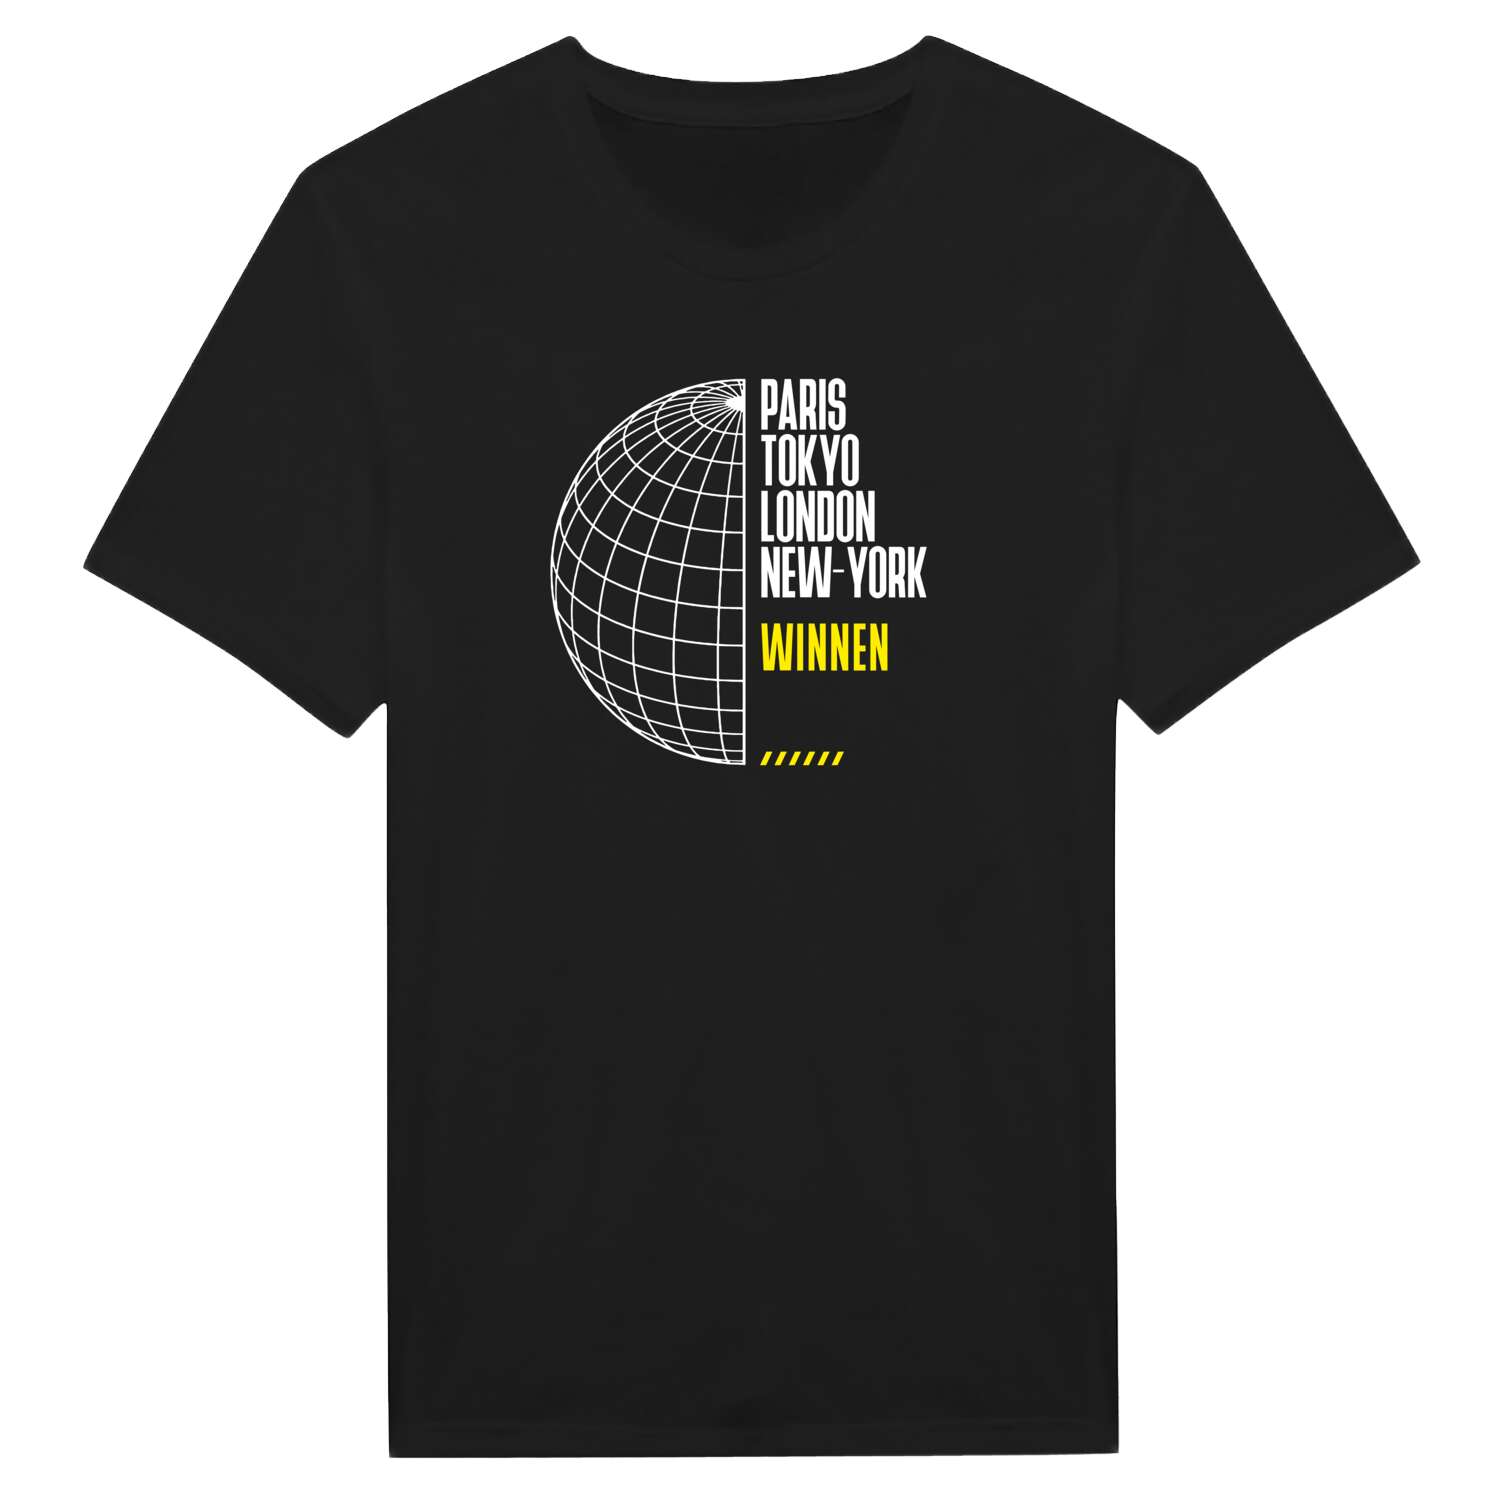 Winnen T-Shirt »Paris Tokyo London«